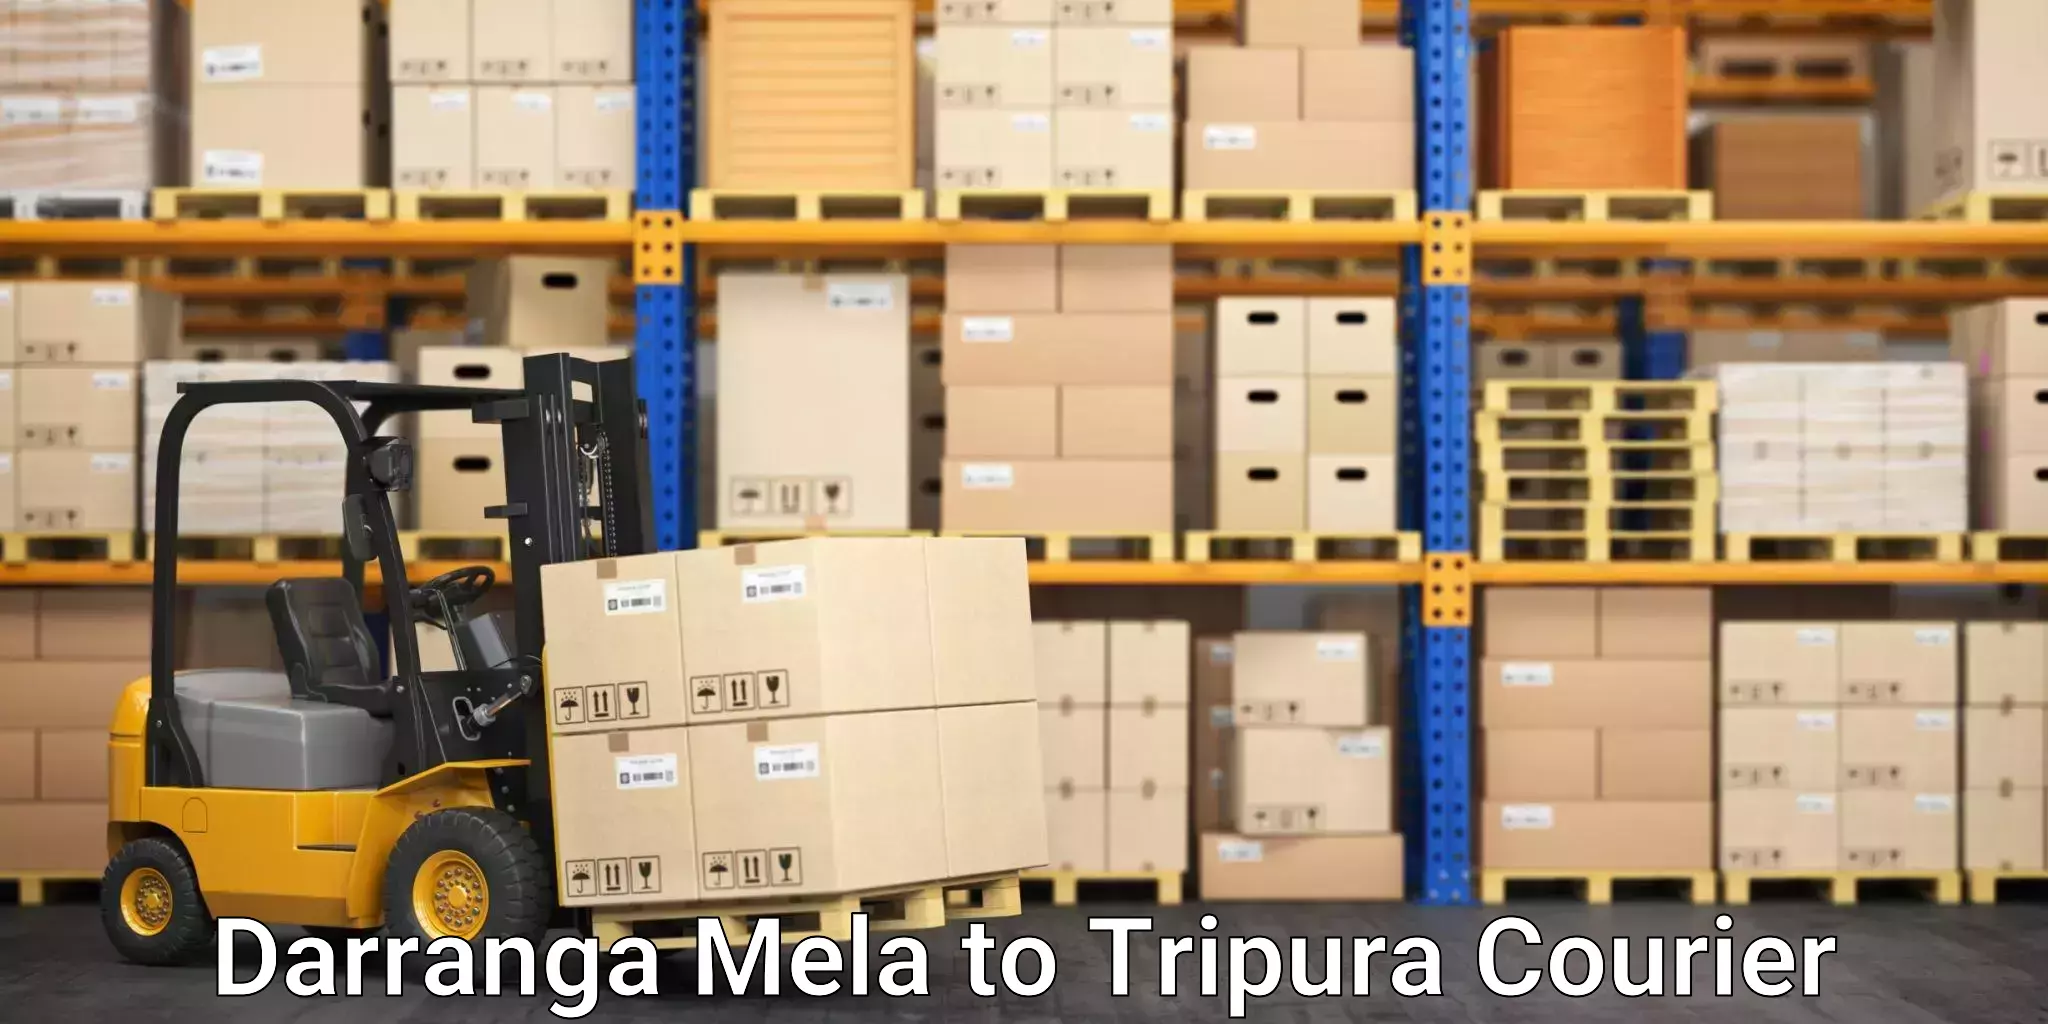 Courier services Darranga Mela to Tripura